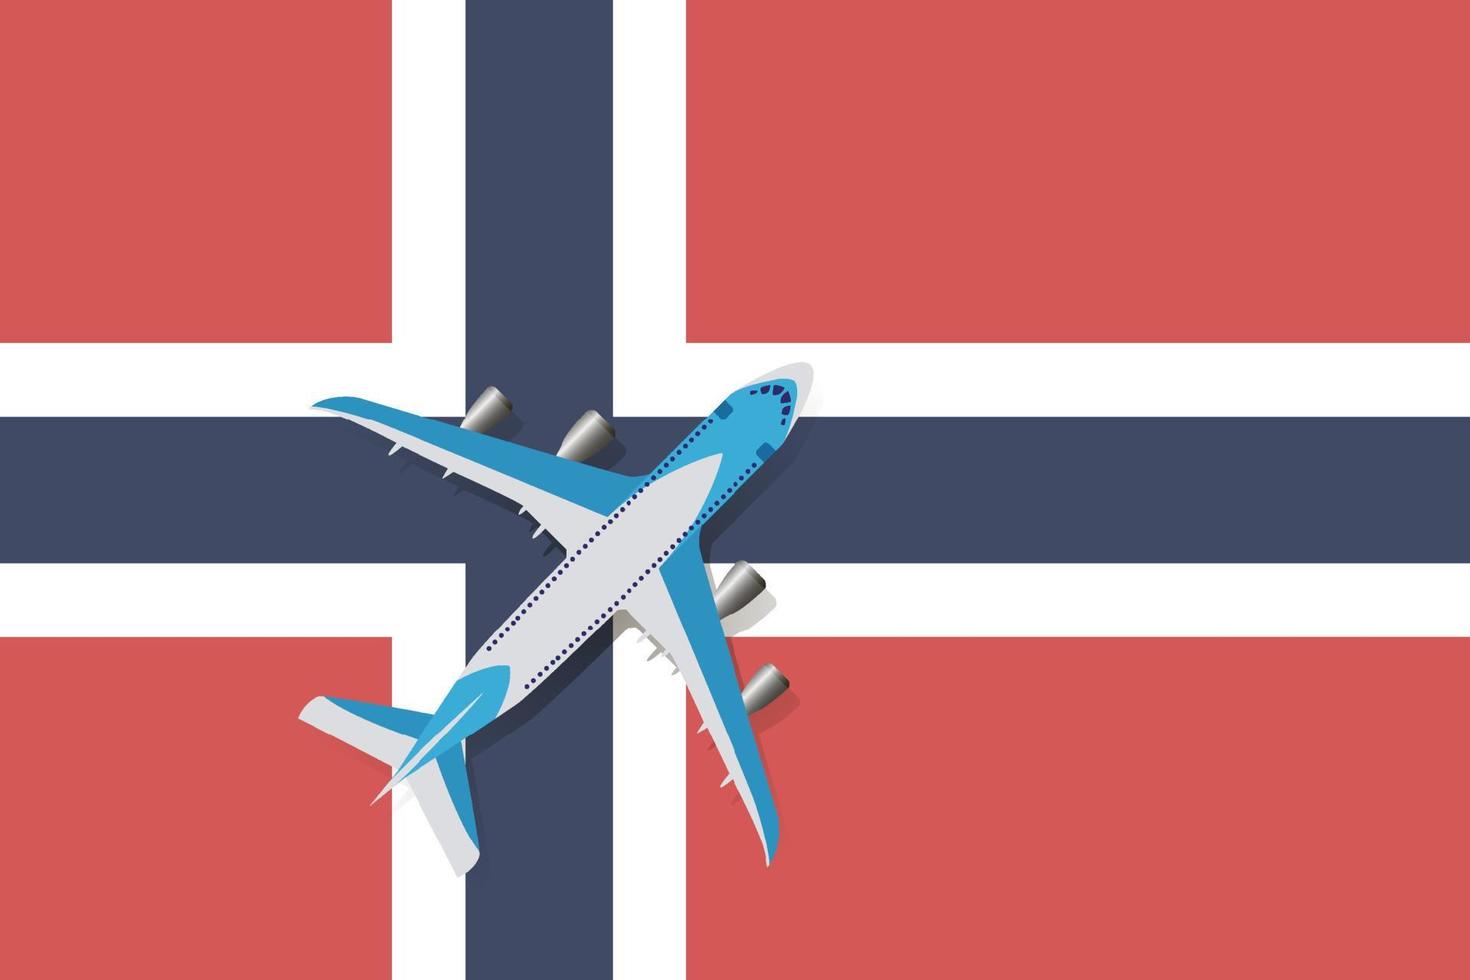 vektorillustration av ett passagerarplan som flyger över norges flagga. begreppet turism och resor vektor